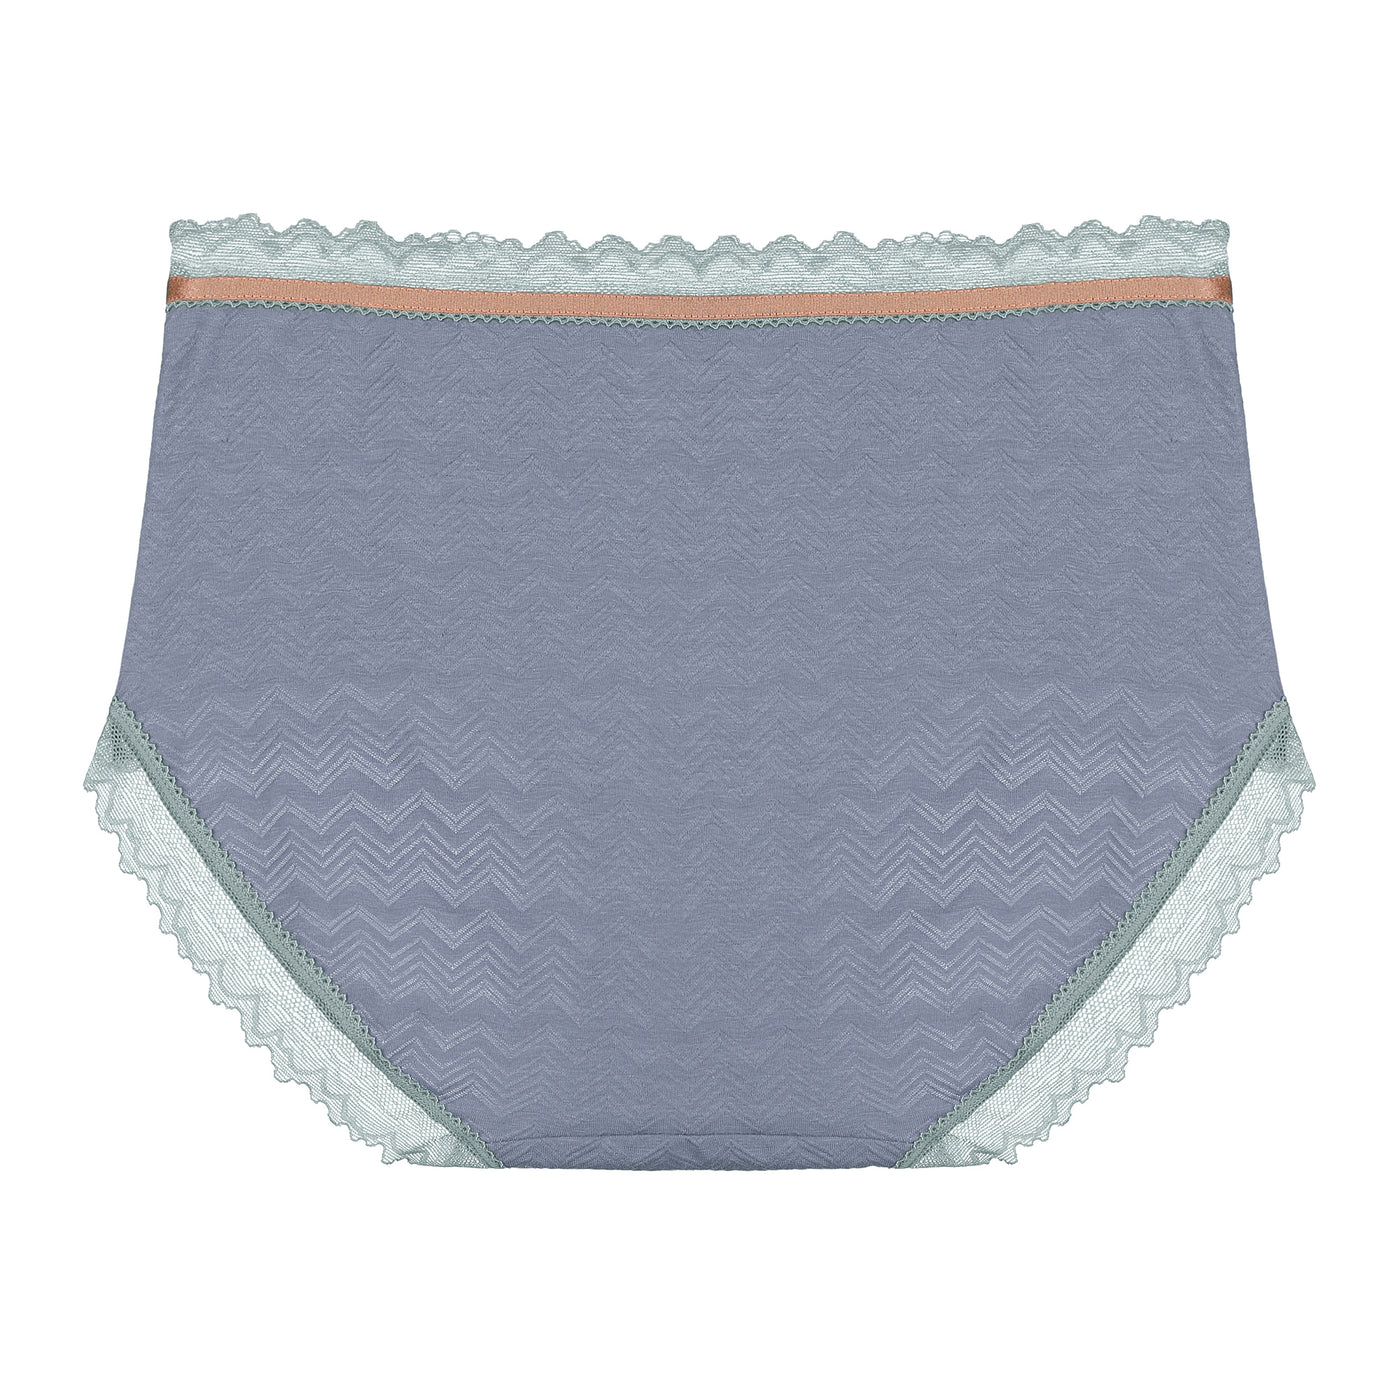 Bublédon Women's Plus Size Lace Trim Cotton Brief Underwear Panties